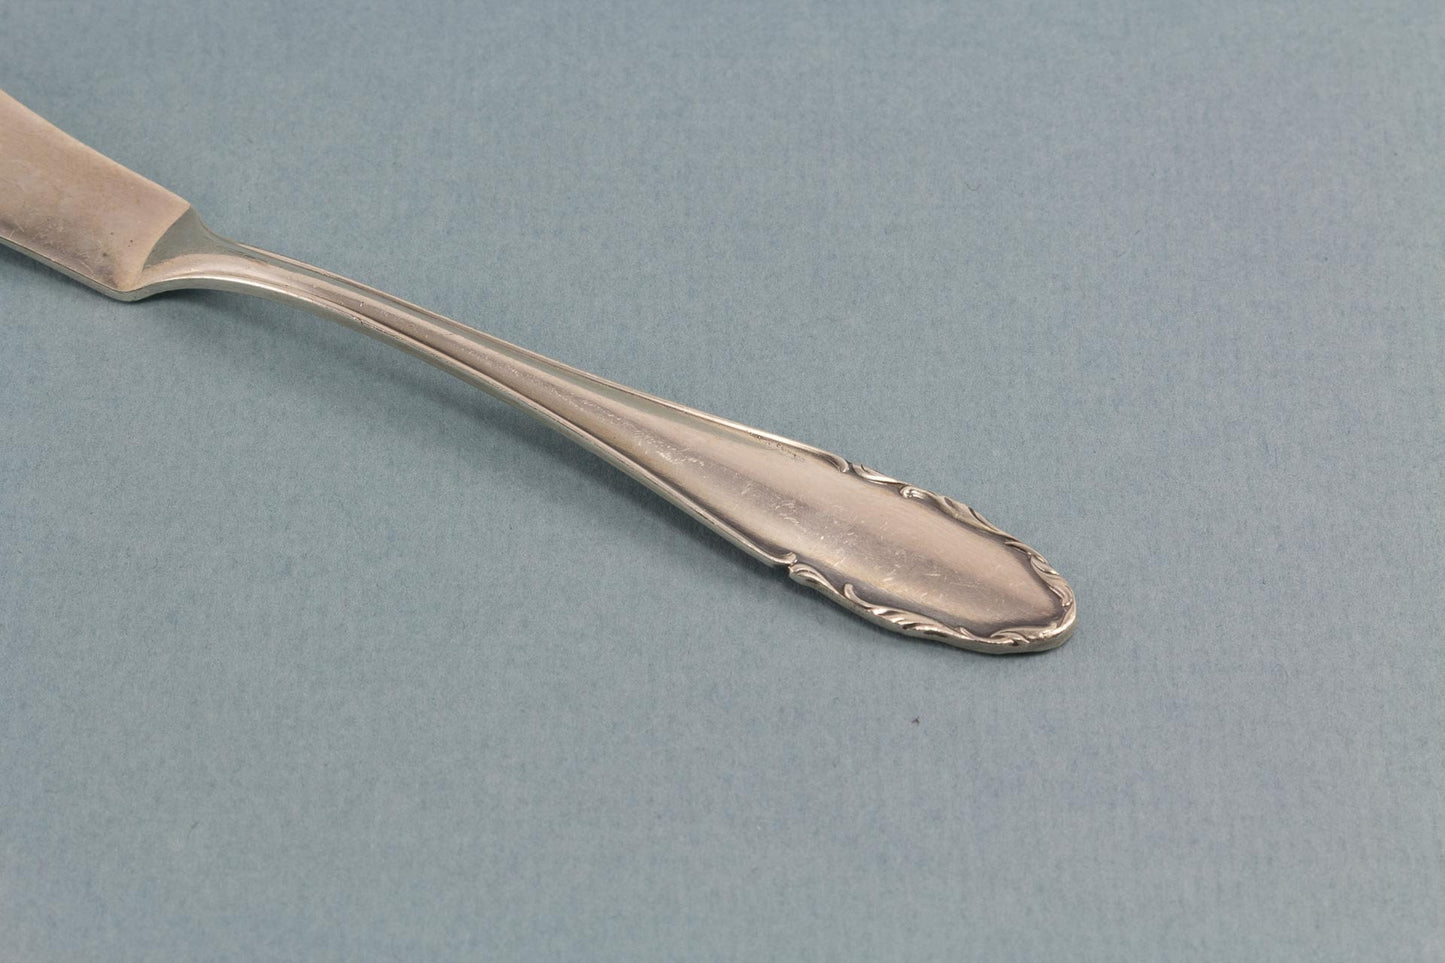 Seltenes Kaviarmesser von WMF, sehr kleines Messer WMF 2200